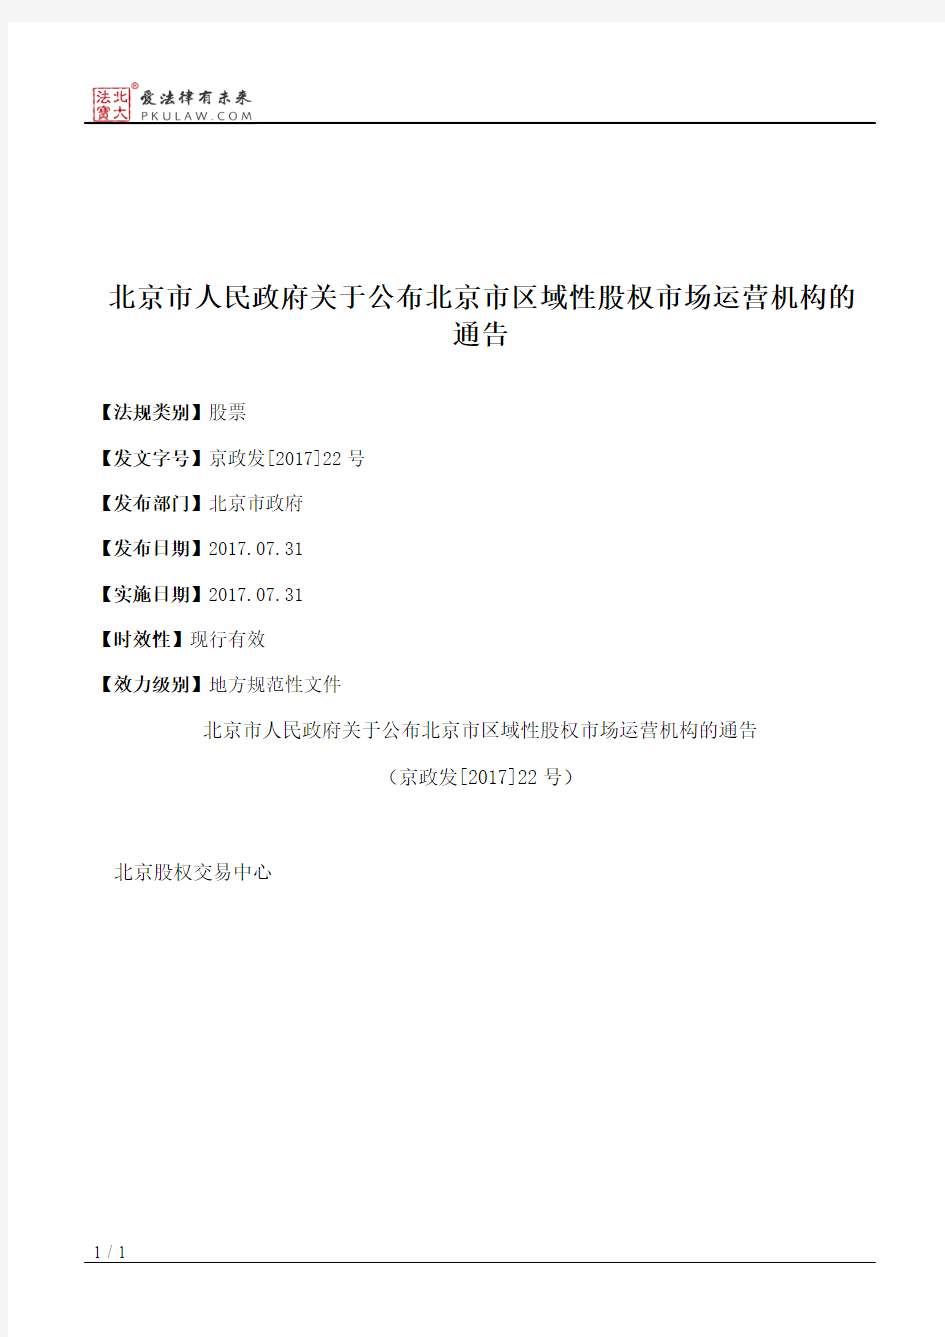 北京市人民政府关于公布北京市区域性股权市场运营机构的通告